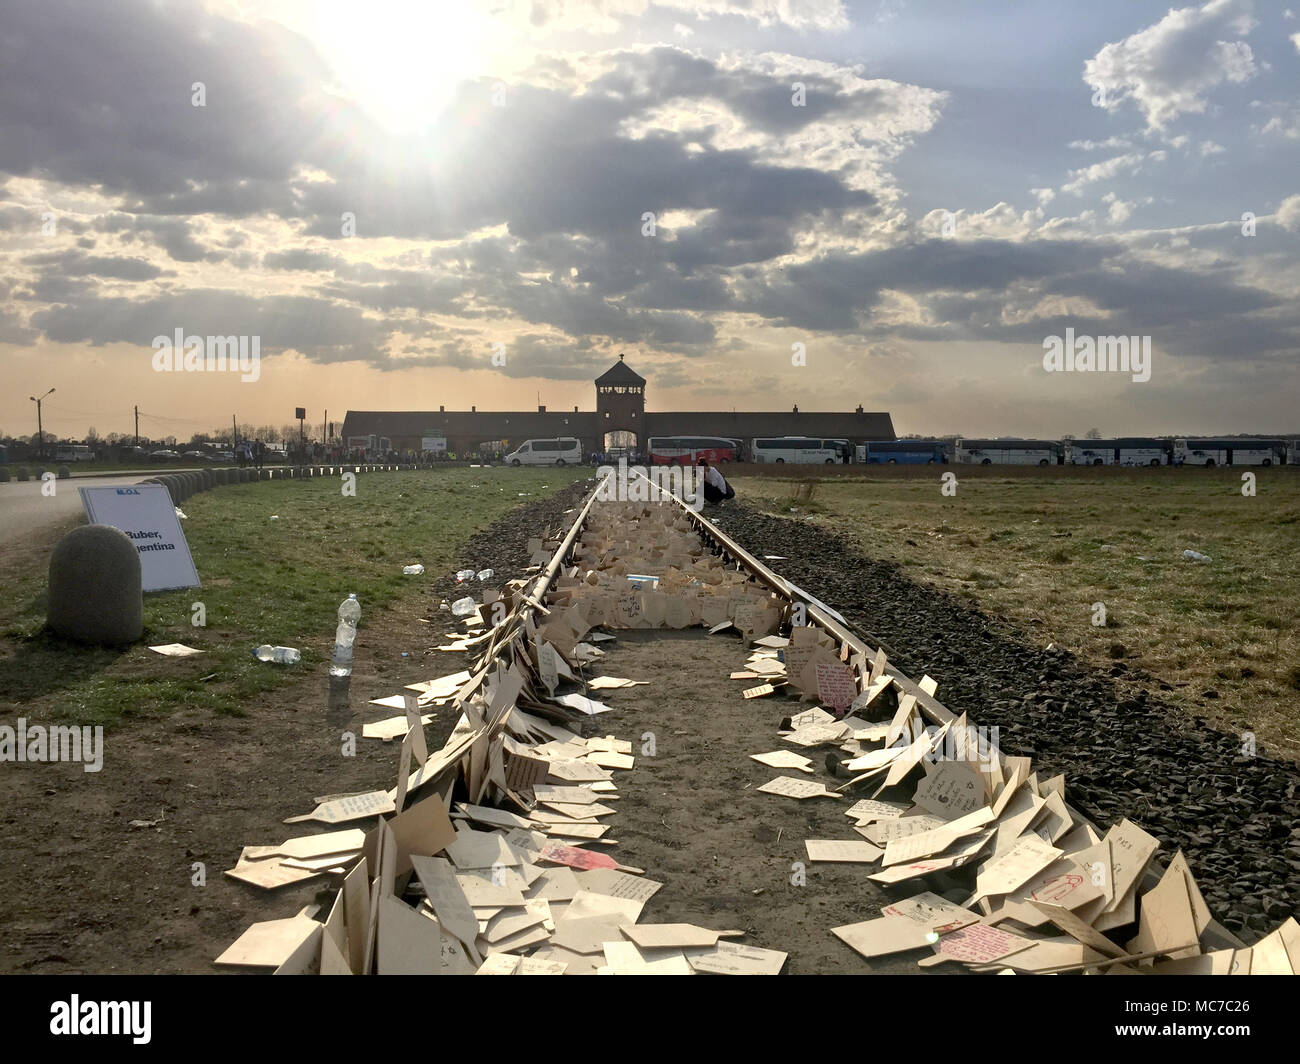 12 avril 2018, la Pologne, l'Auschwitz : Les cartes sont dispersés le long de la voie ferrée menant à l'ancien camp de concentration de Birkenau. Les participants de la 'Marche de la vie" ont écrit les noms de leur relative sur la carte pour qui ils ont été takeing part au mois de mars. Environ 12 000 jeunes Juifs du monde entier ont commémoré les victimes de l'Holocauste. Ensemble, ils ont marché avec les survivants sur les trois kilomètres de chemin d'Auschwitz à Birkenau, ce qui était le plus grand camp d'extermination allemand durant la période nazie. Photo : Natalie Skrzypczak/dpa Banque D'Images